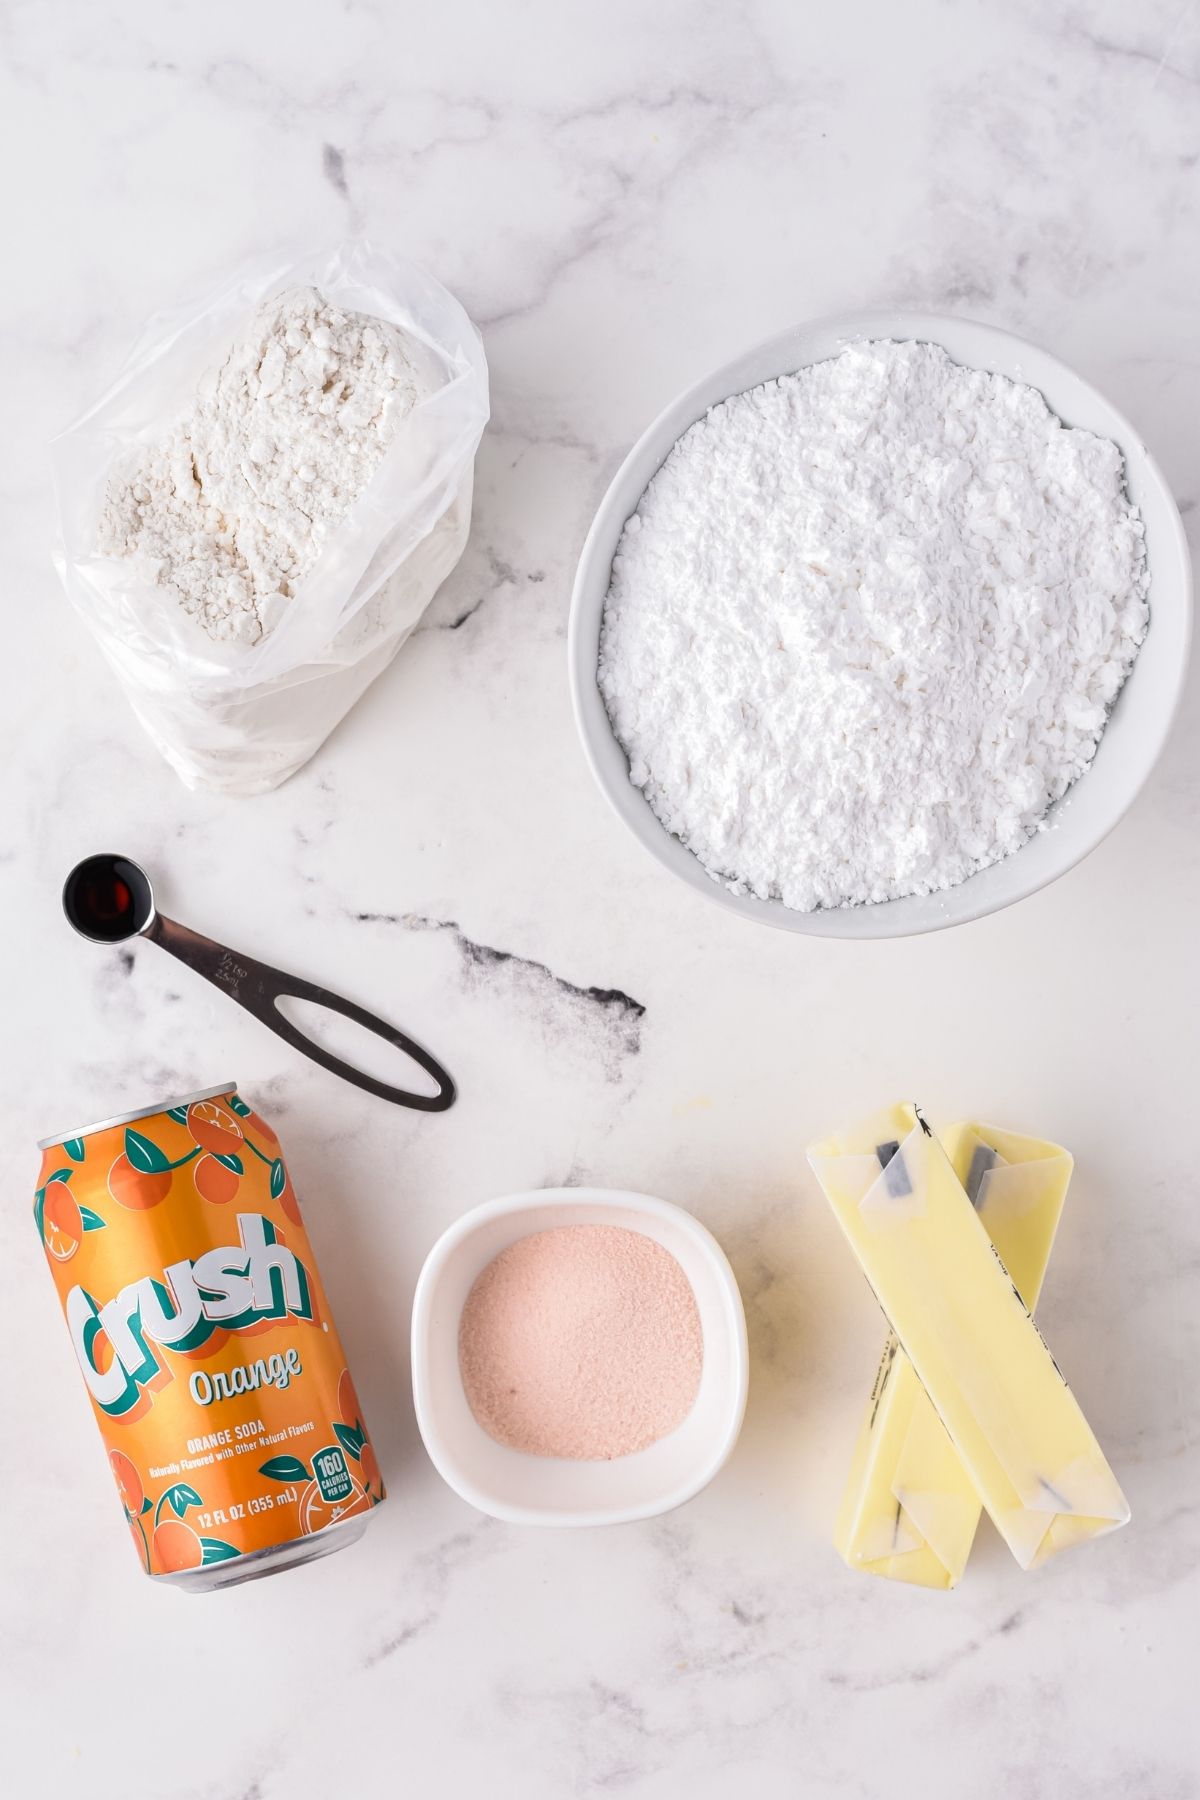 ingredients on counter: cake mix, powdered sugar, 2 sticks of butter, Orange gelatin, Crush orange soda